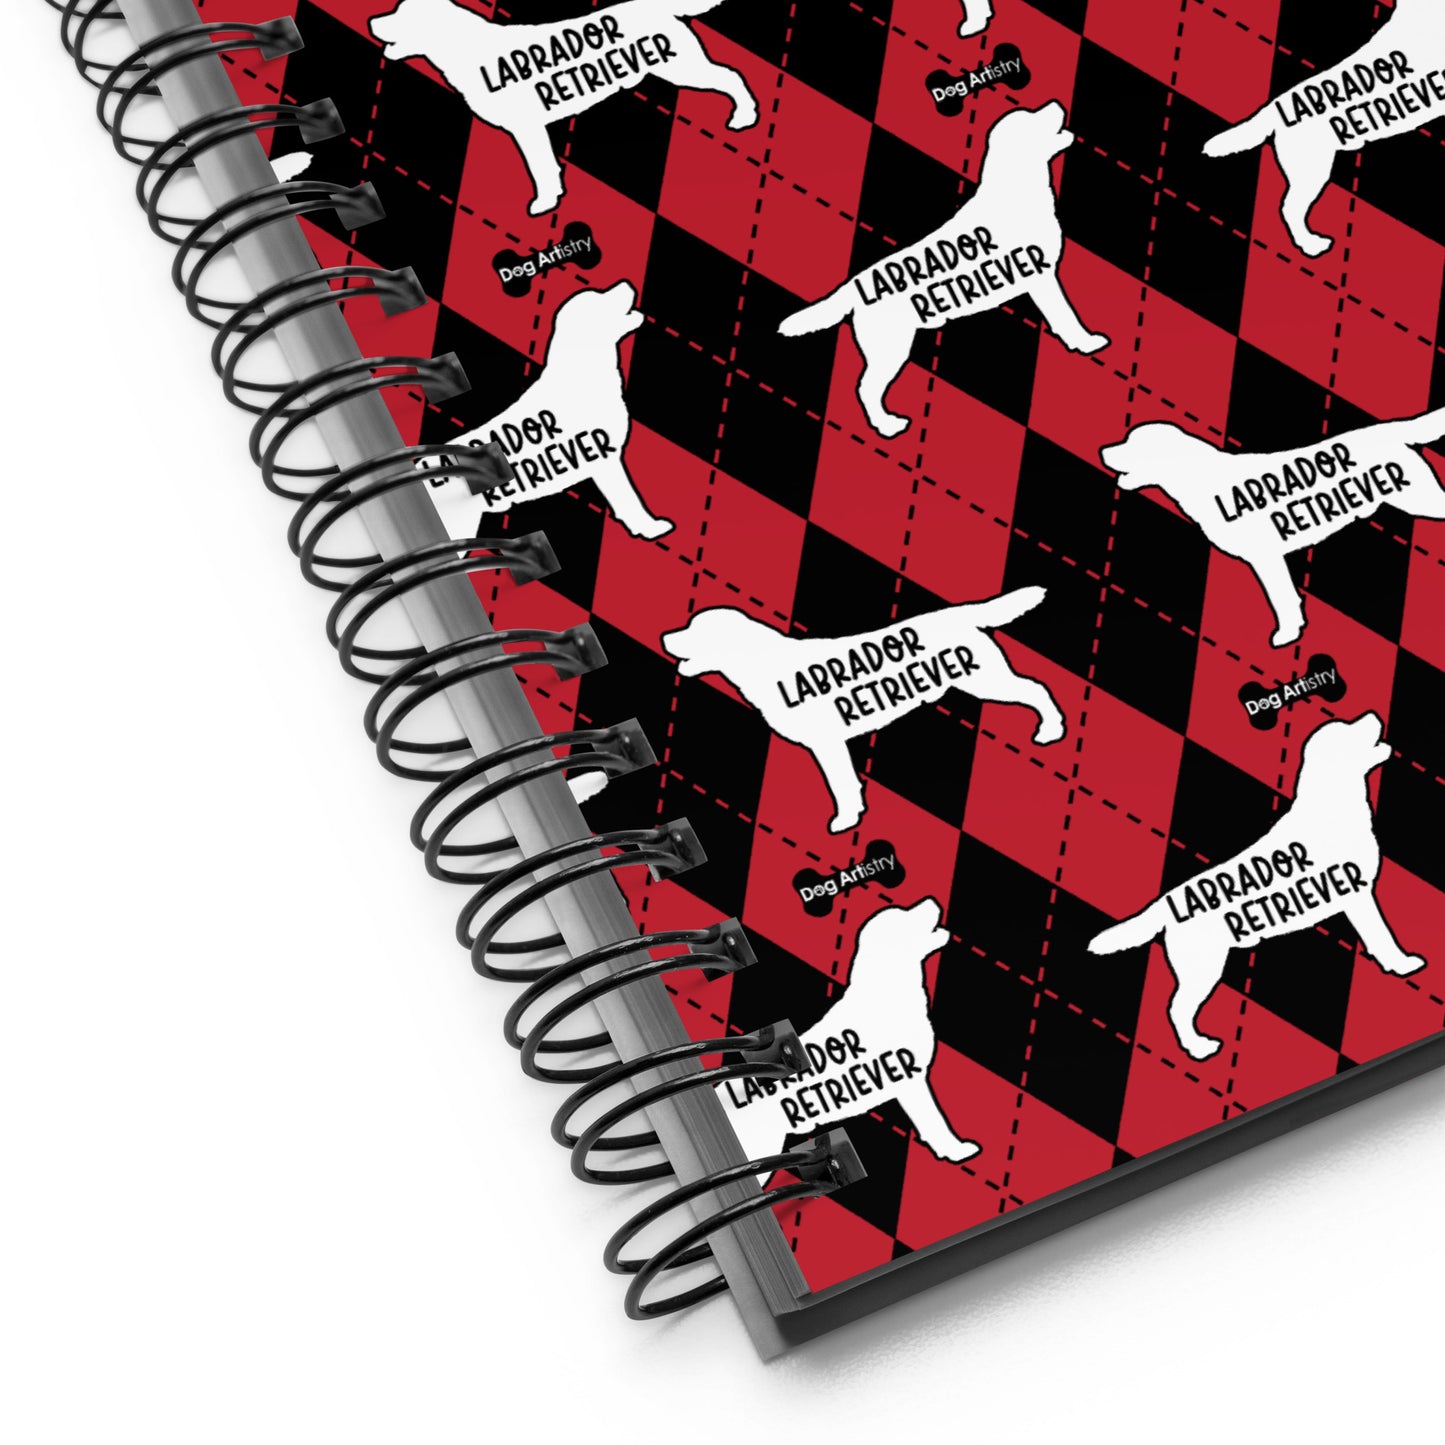 Labrador Retriever Argyle Red and Black Spiral Notebooks